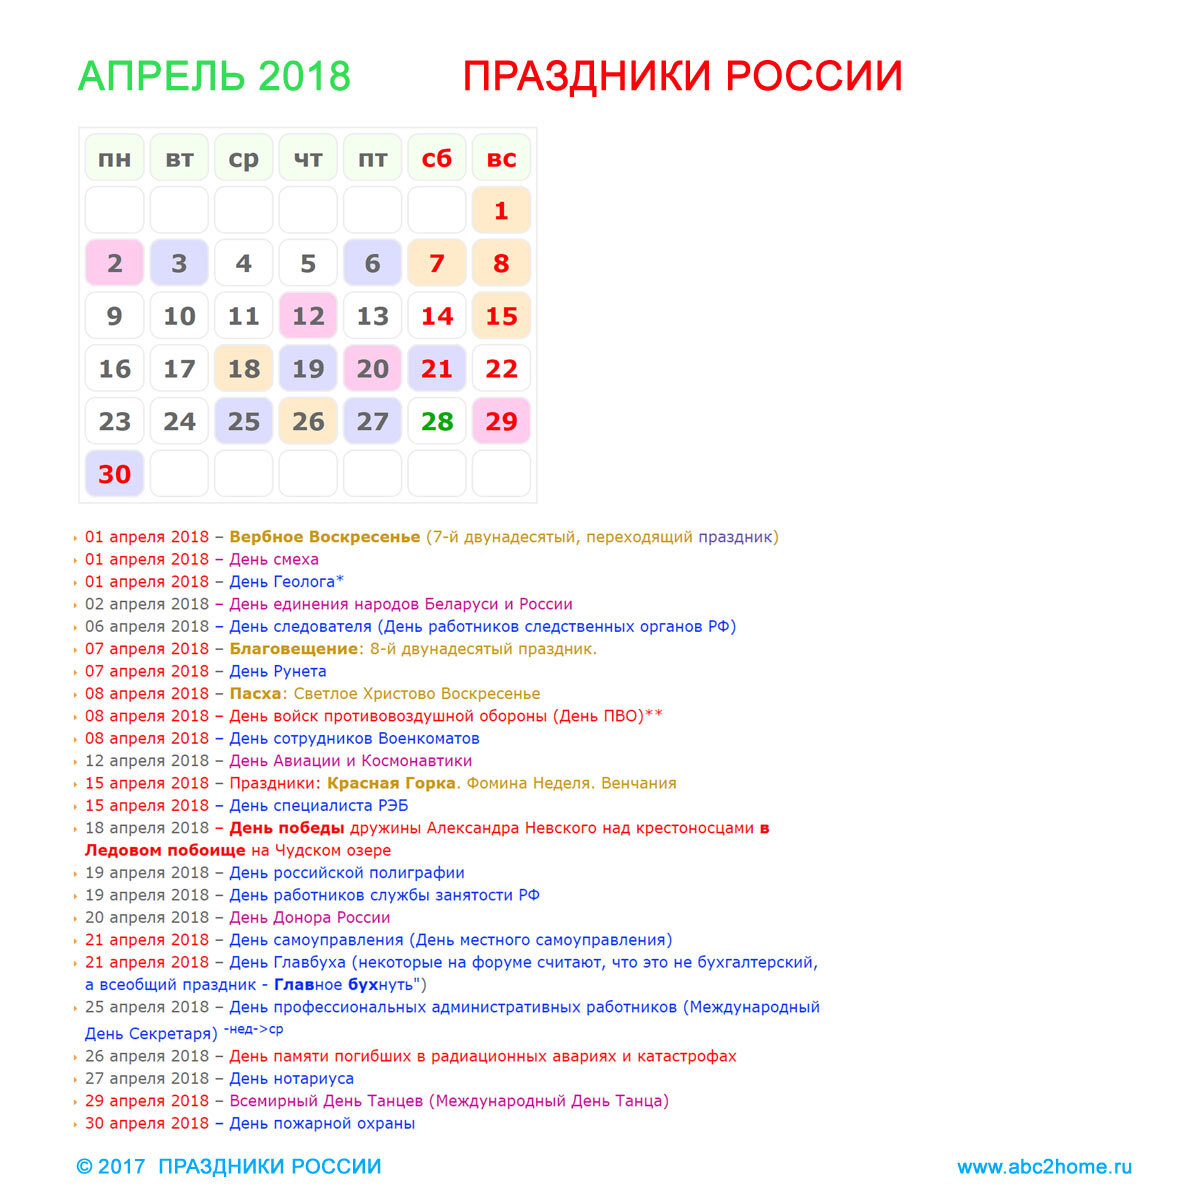 Какие праздники есть 9 апреля. Праздники в апреле. Апрель праздники апреля. Праздники в апреле в России. Профессиональные праздники в апреле.